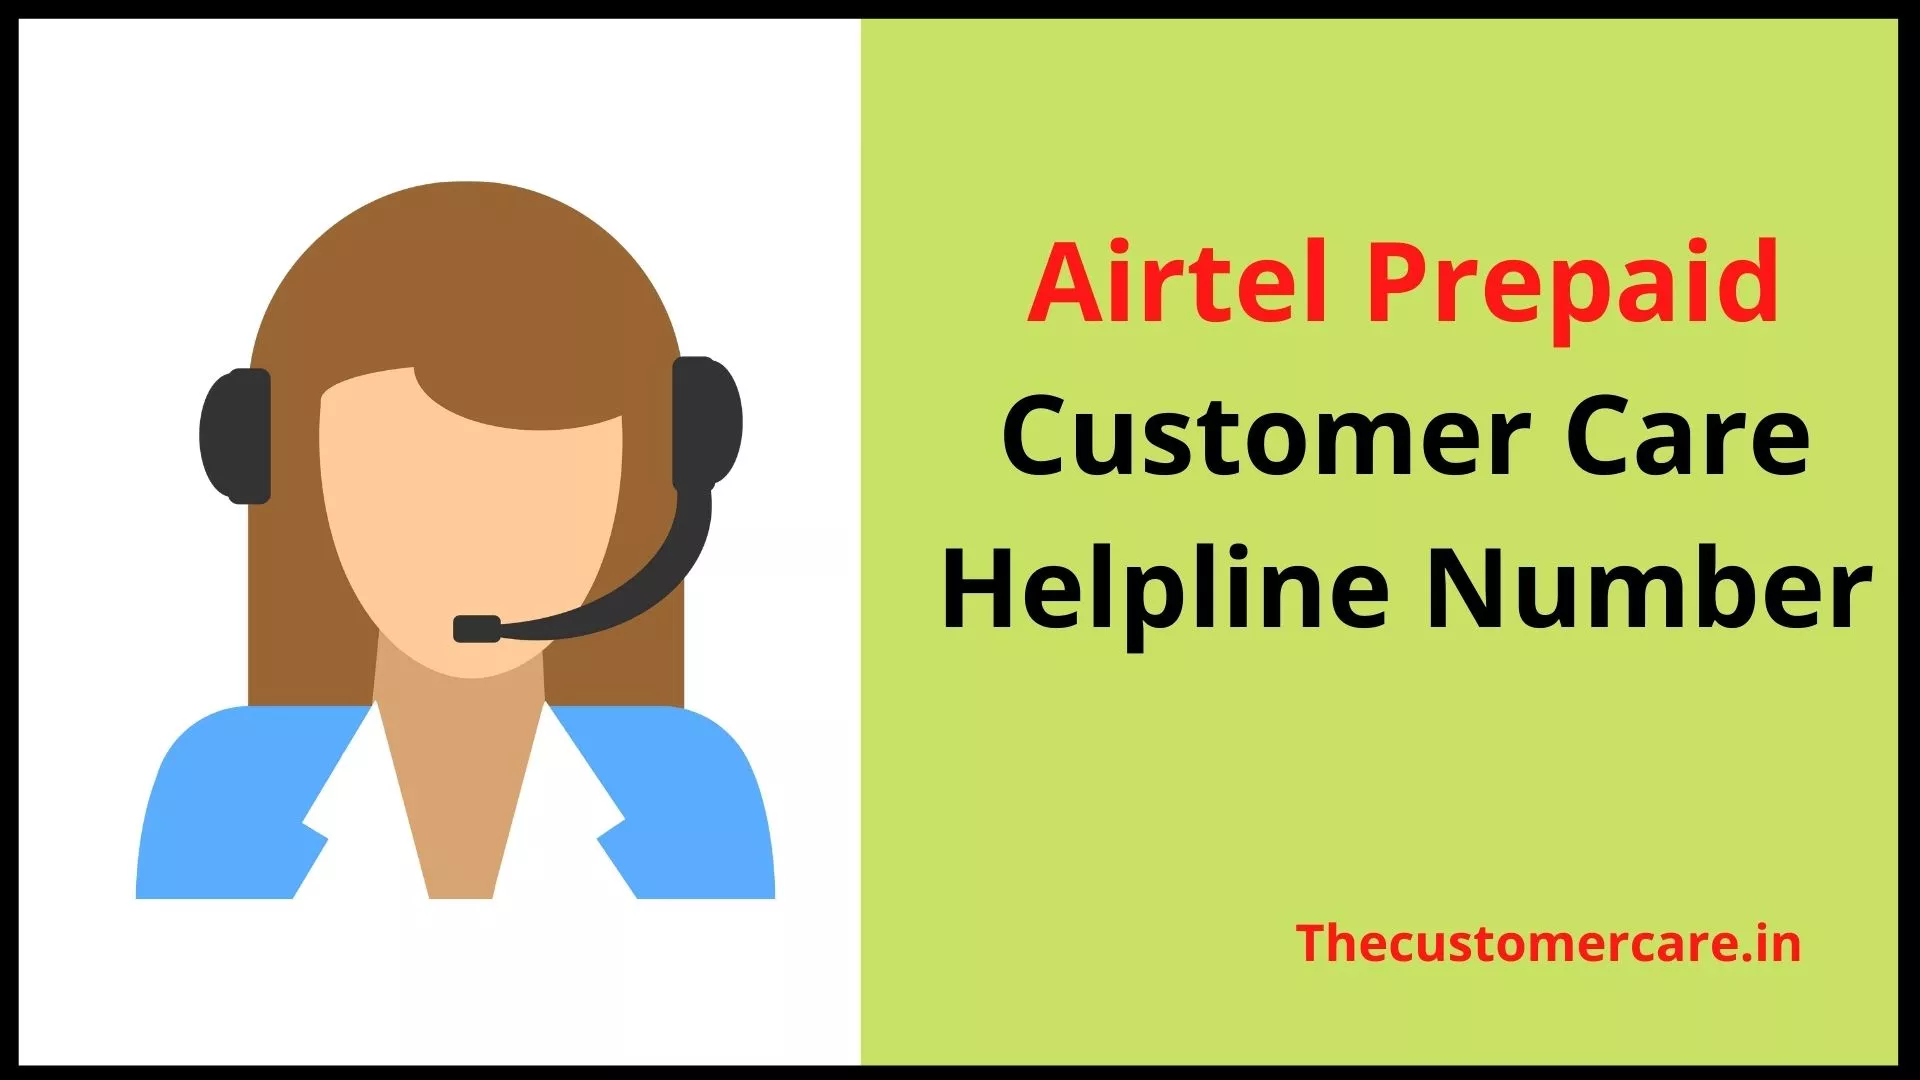 Airtel Prepaid Customer Care Helpline Number